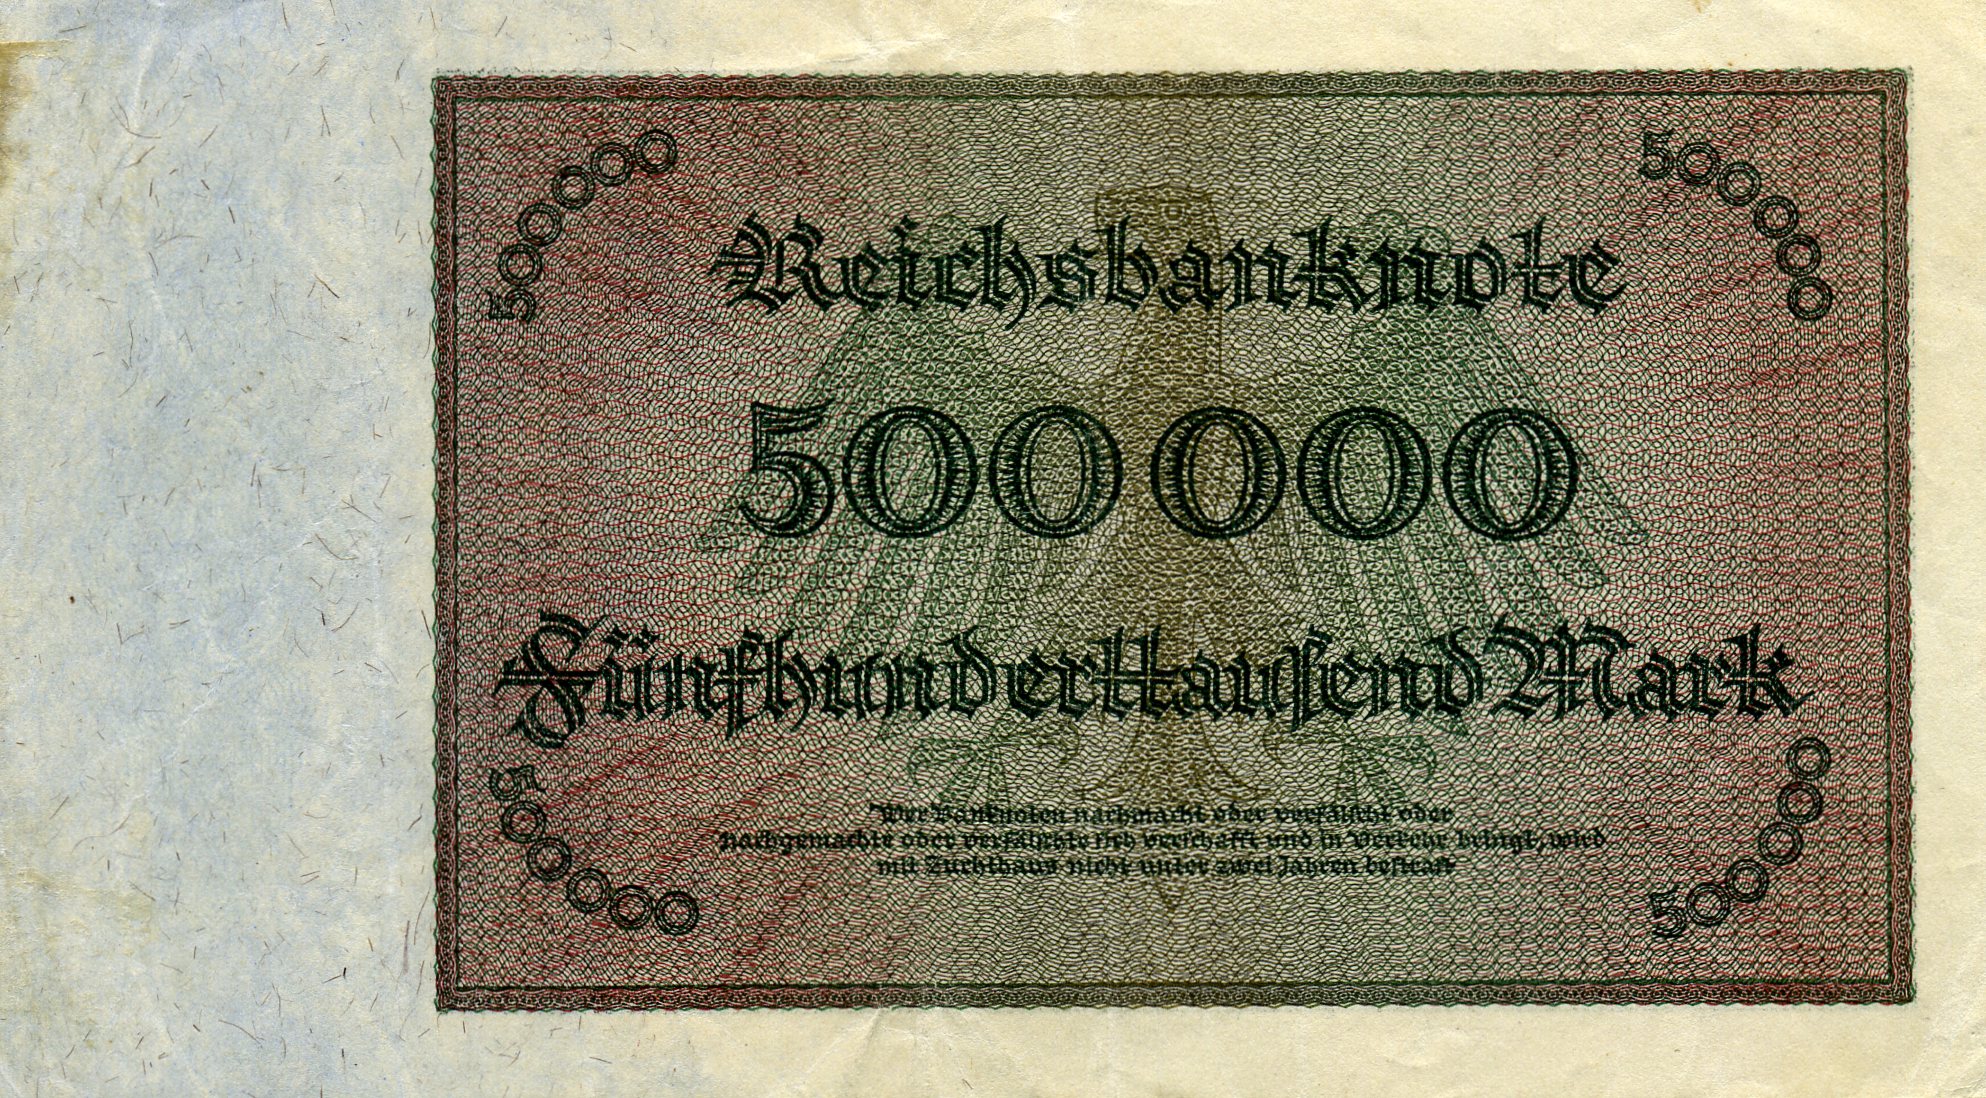 500000 марок 1 мая 1923 года. Реверс. Реферат Рефератович.